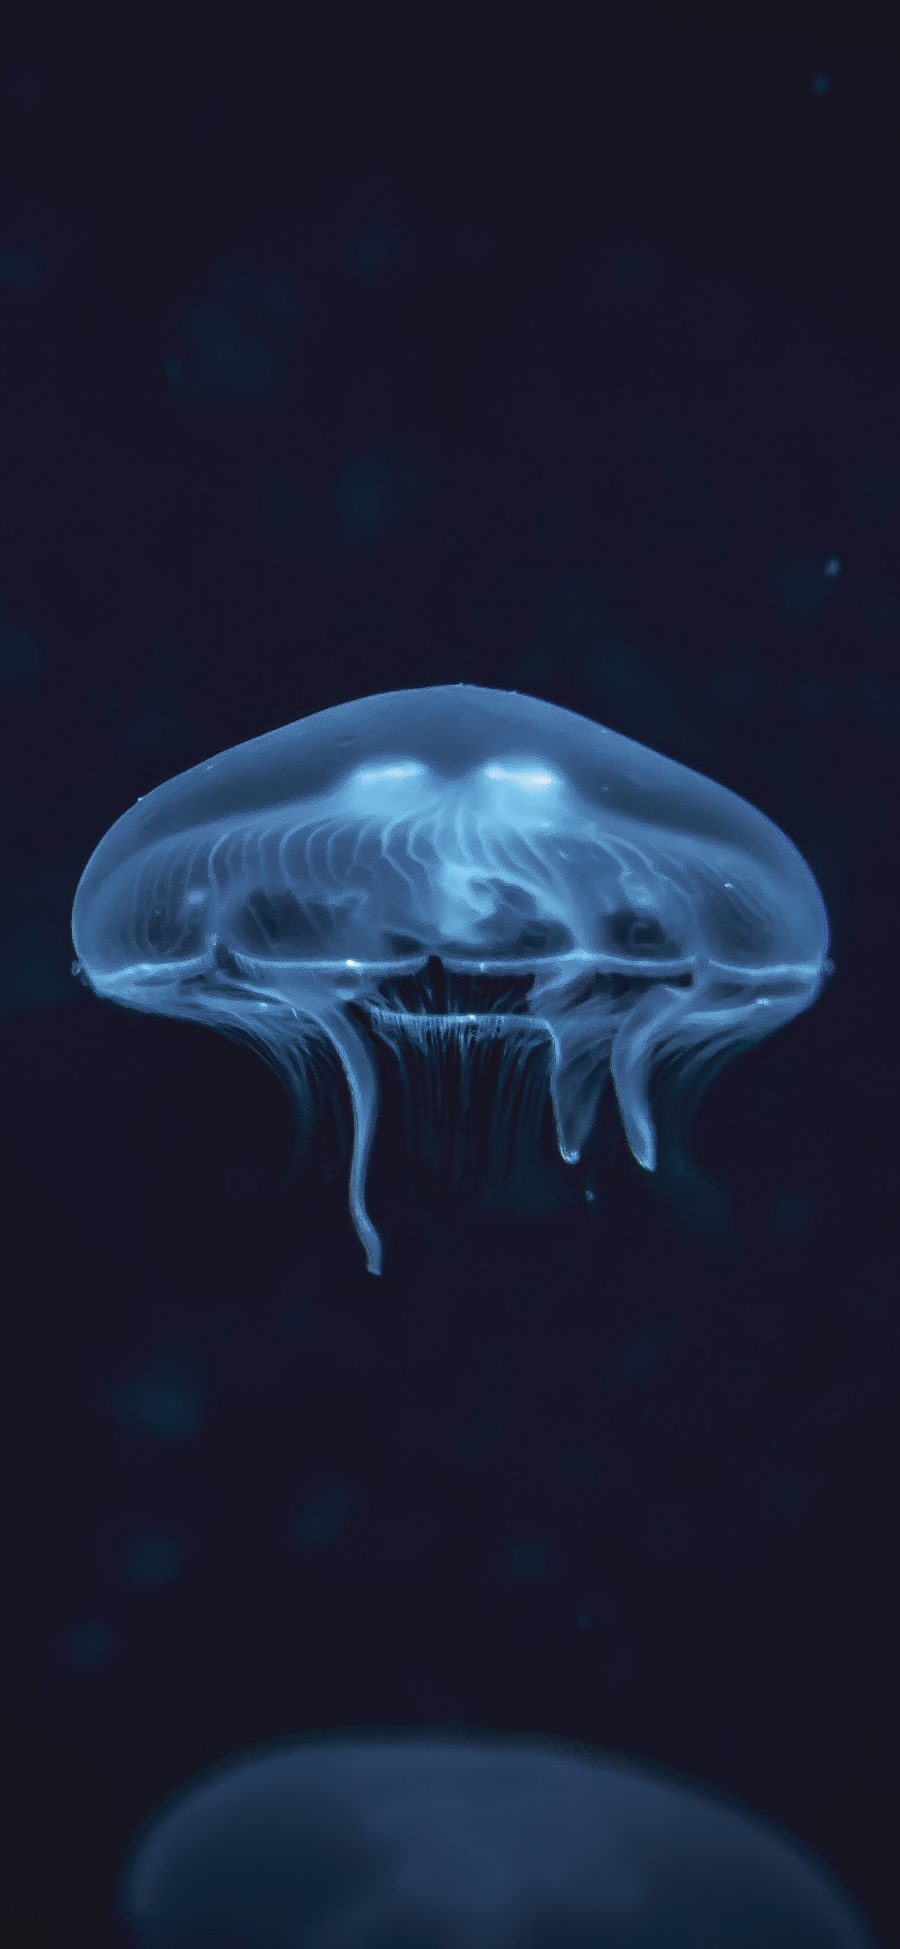 [2436×1125]水母 海洋生物 浮游 海底 苹果手机壁纸图片